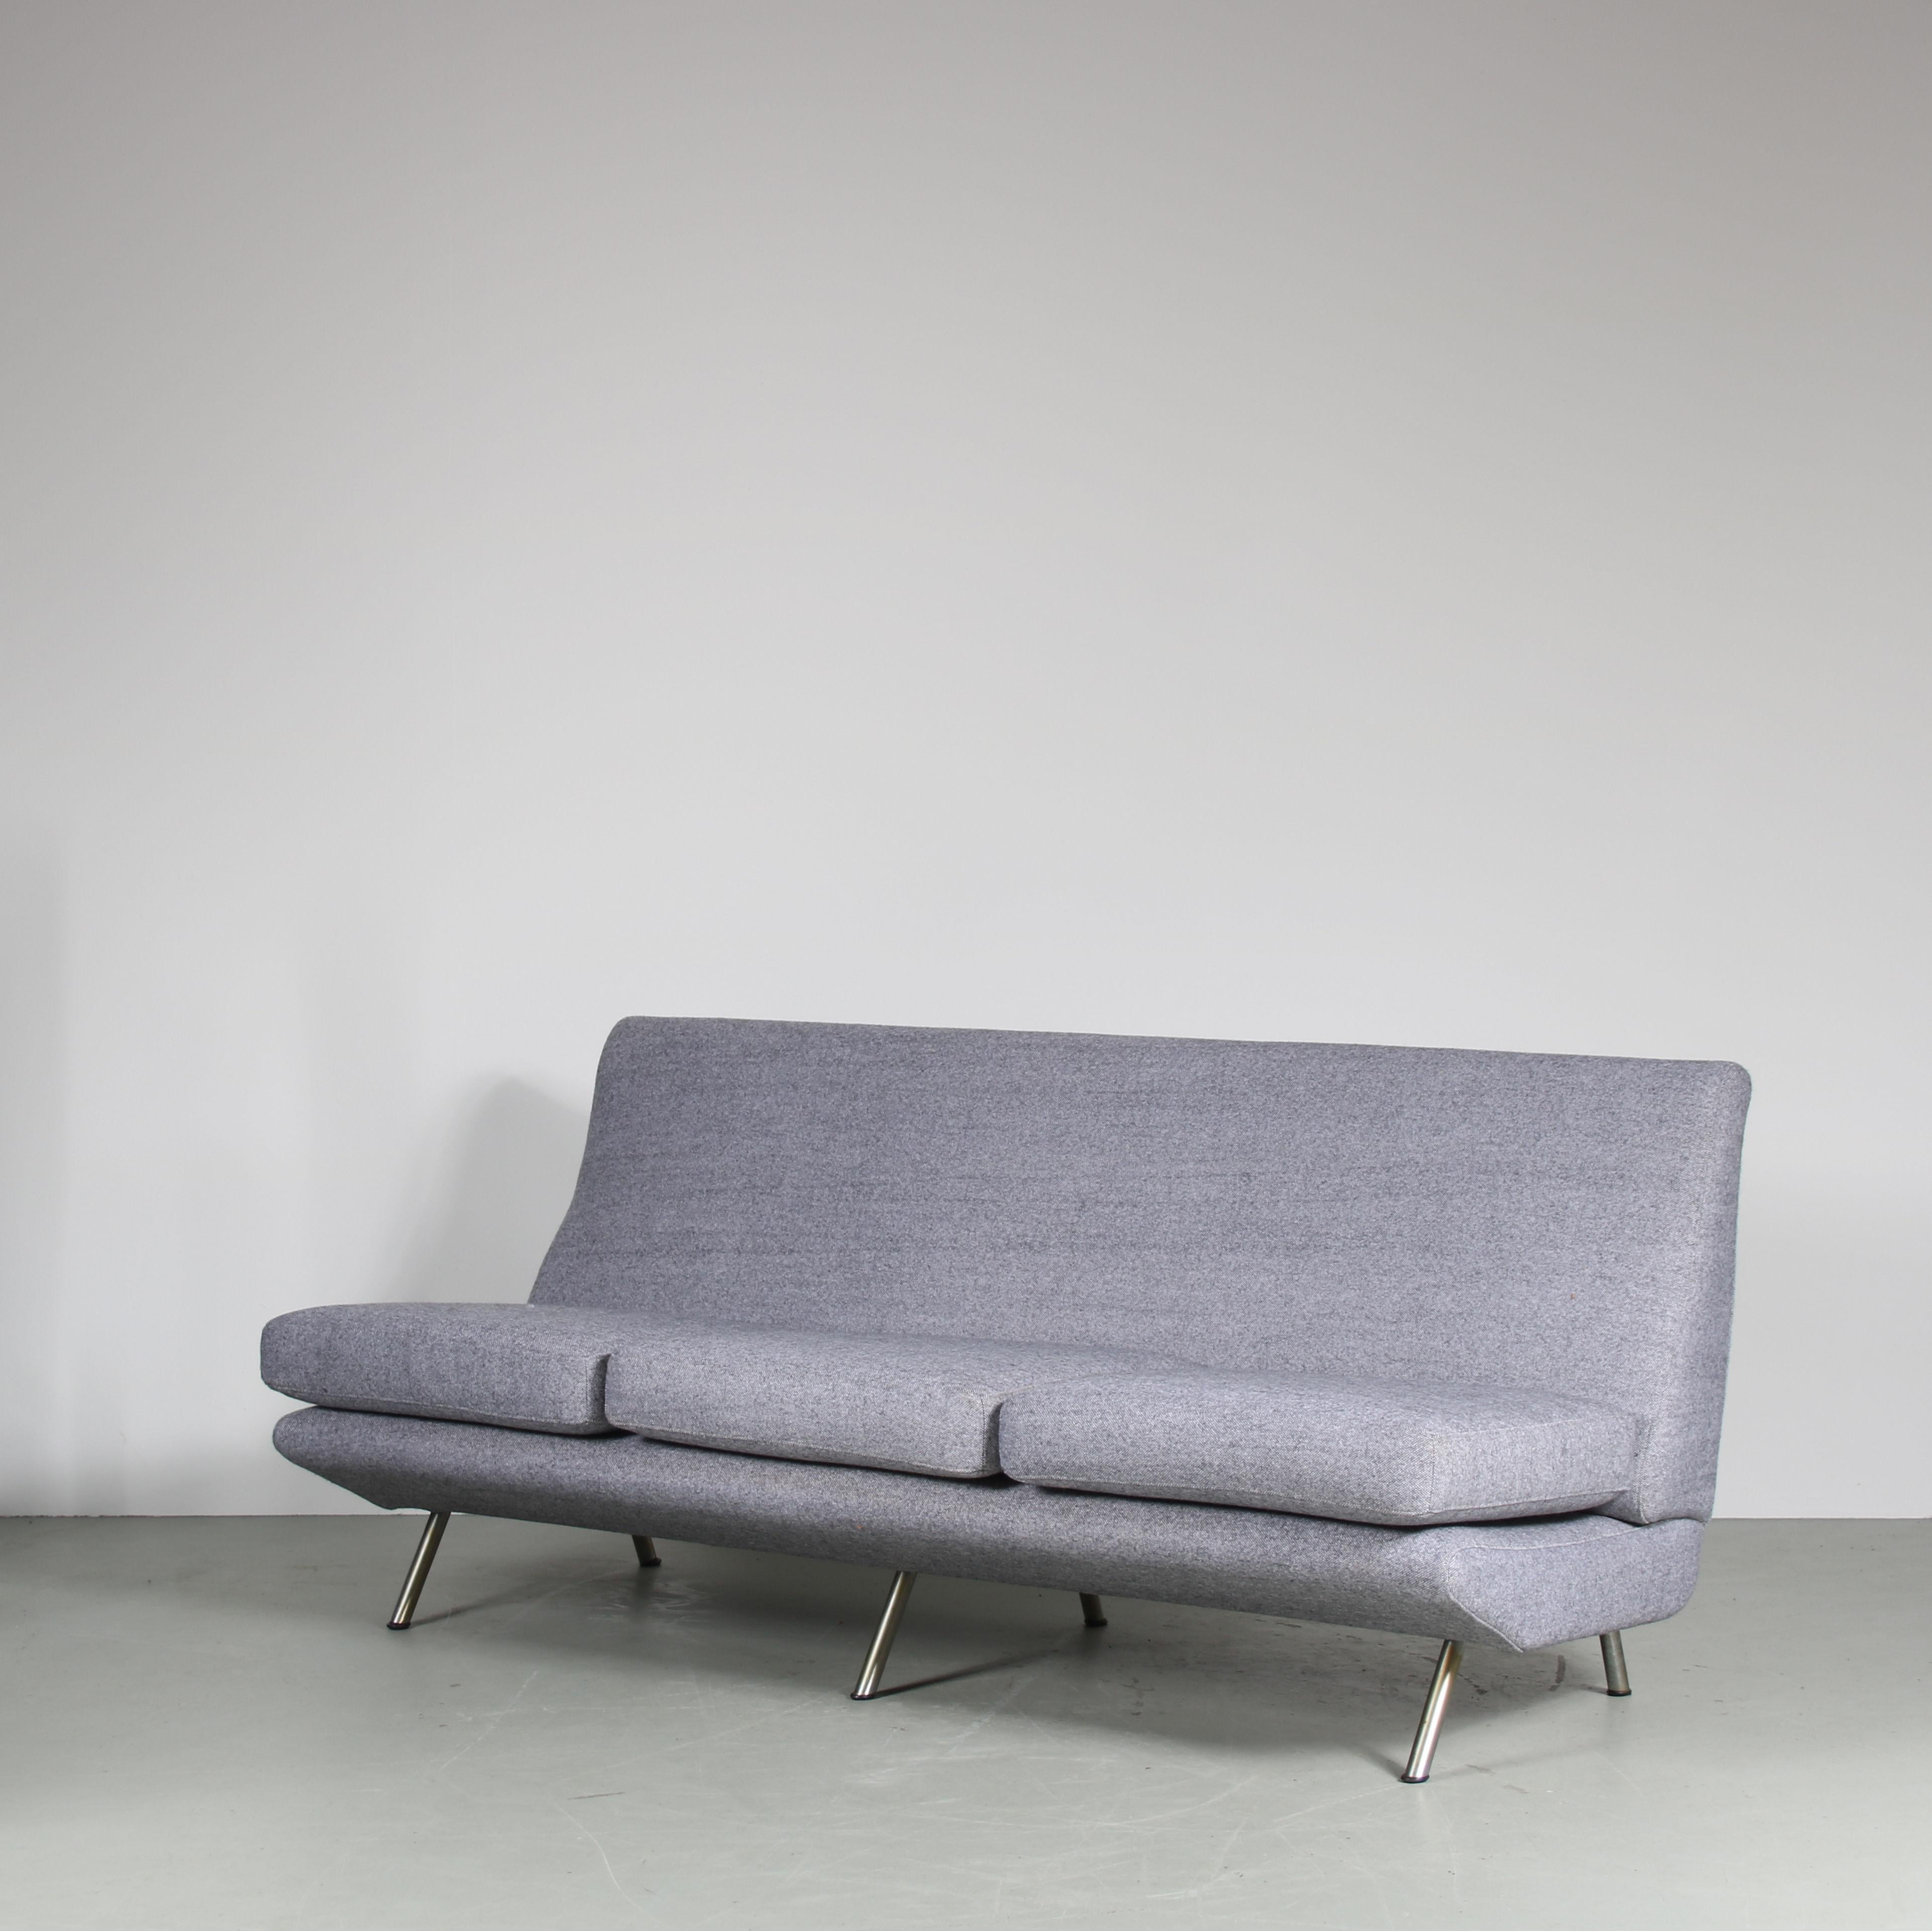 Ein beeindruckendes 3-Sitzer-Sofa, entworfen von Marco Zanuso, hergestellt von Arflex in Italien um 1950.

Dieses auffällige Sofa ist neu mit grauem Stoff bezogen. Die nach außen geneigten, röhrenförmigen Metallbeine unterstreichen den eleganten